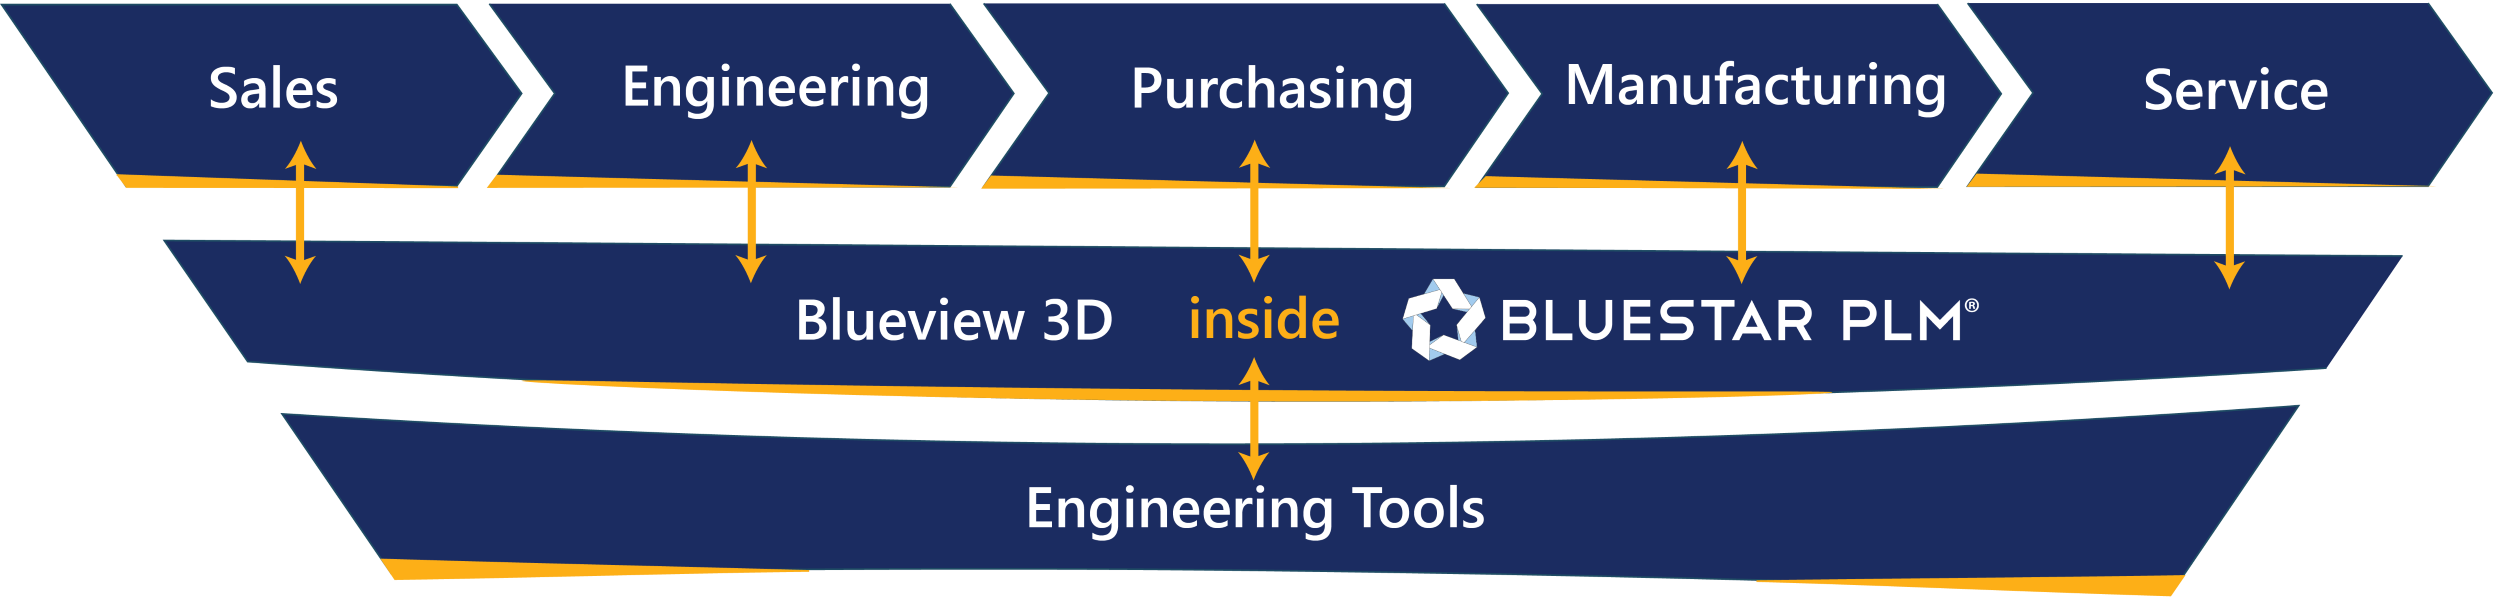 BluestarPLM Integrations Blueview 3D